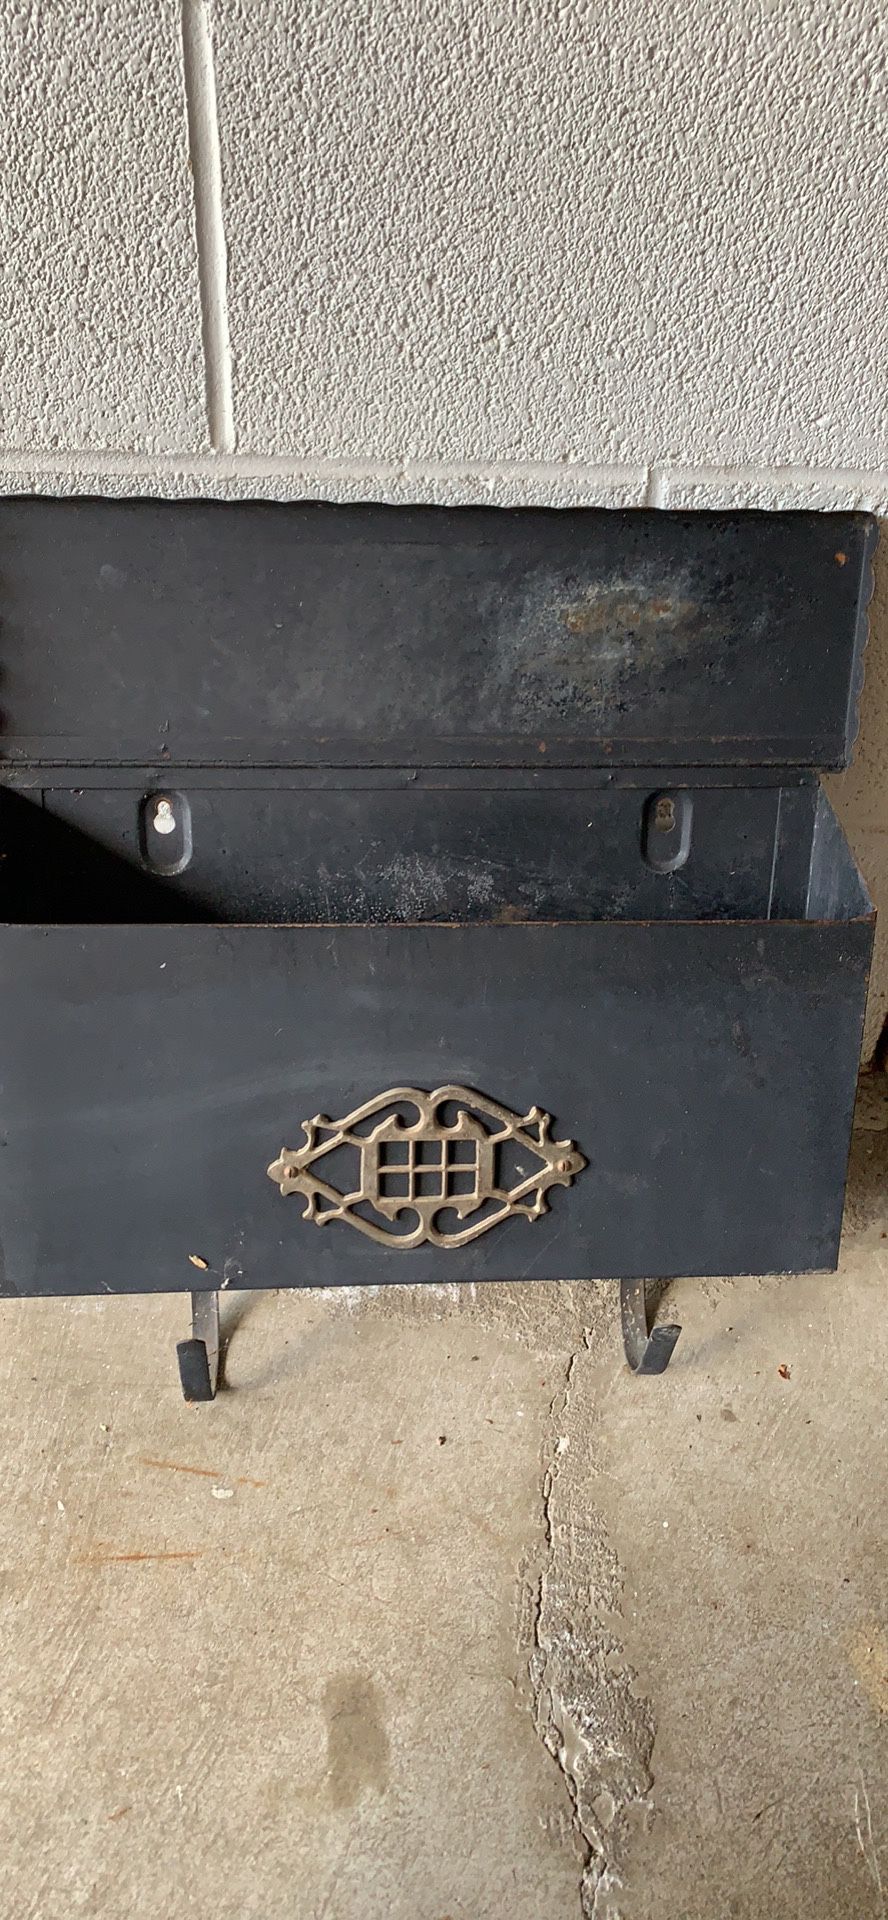 Antique mailbox never rust